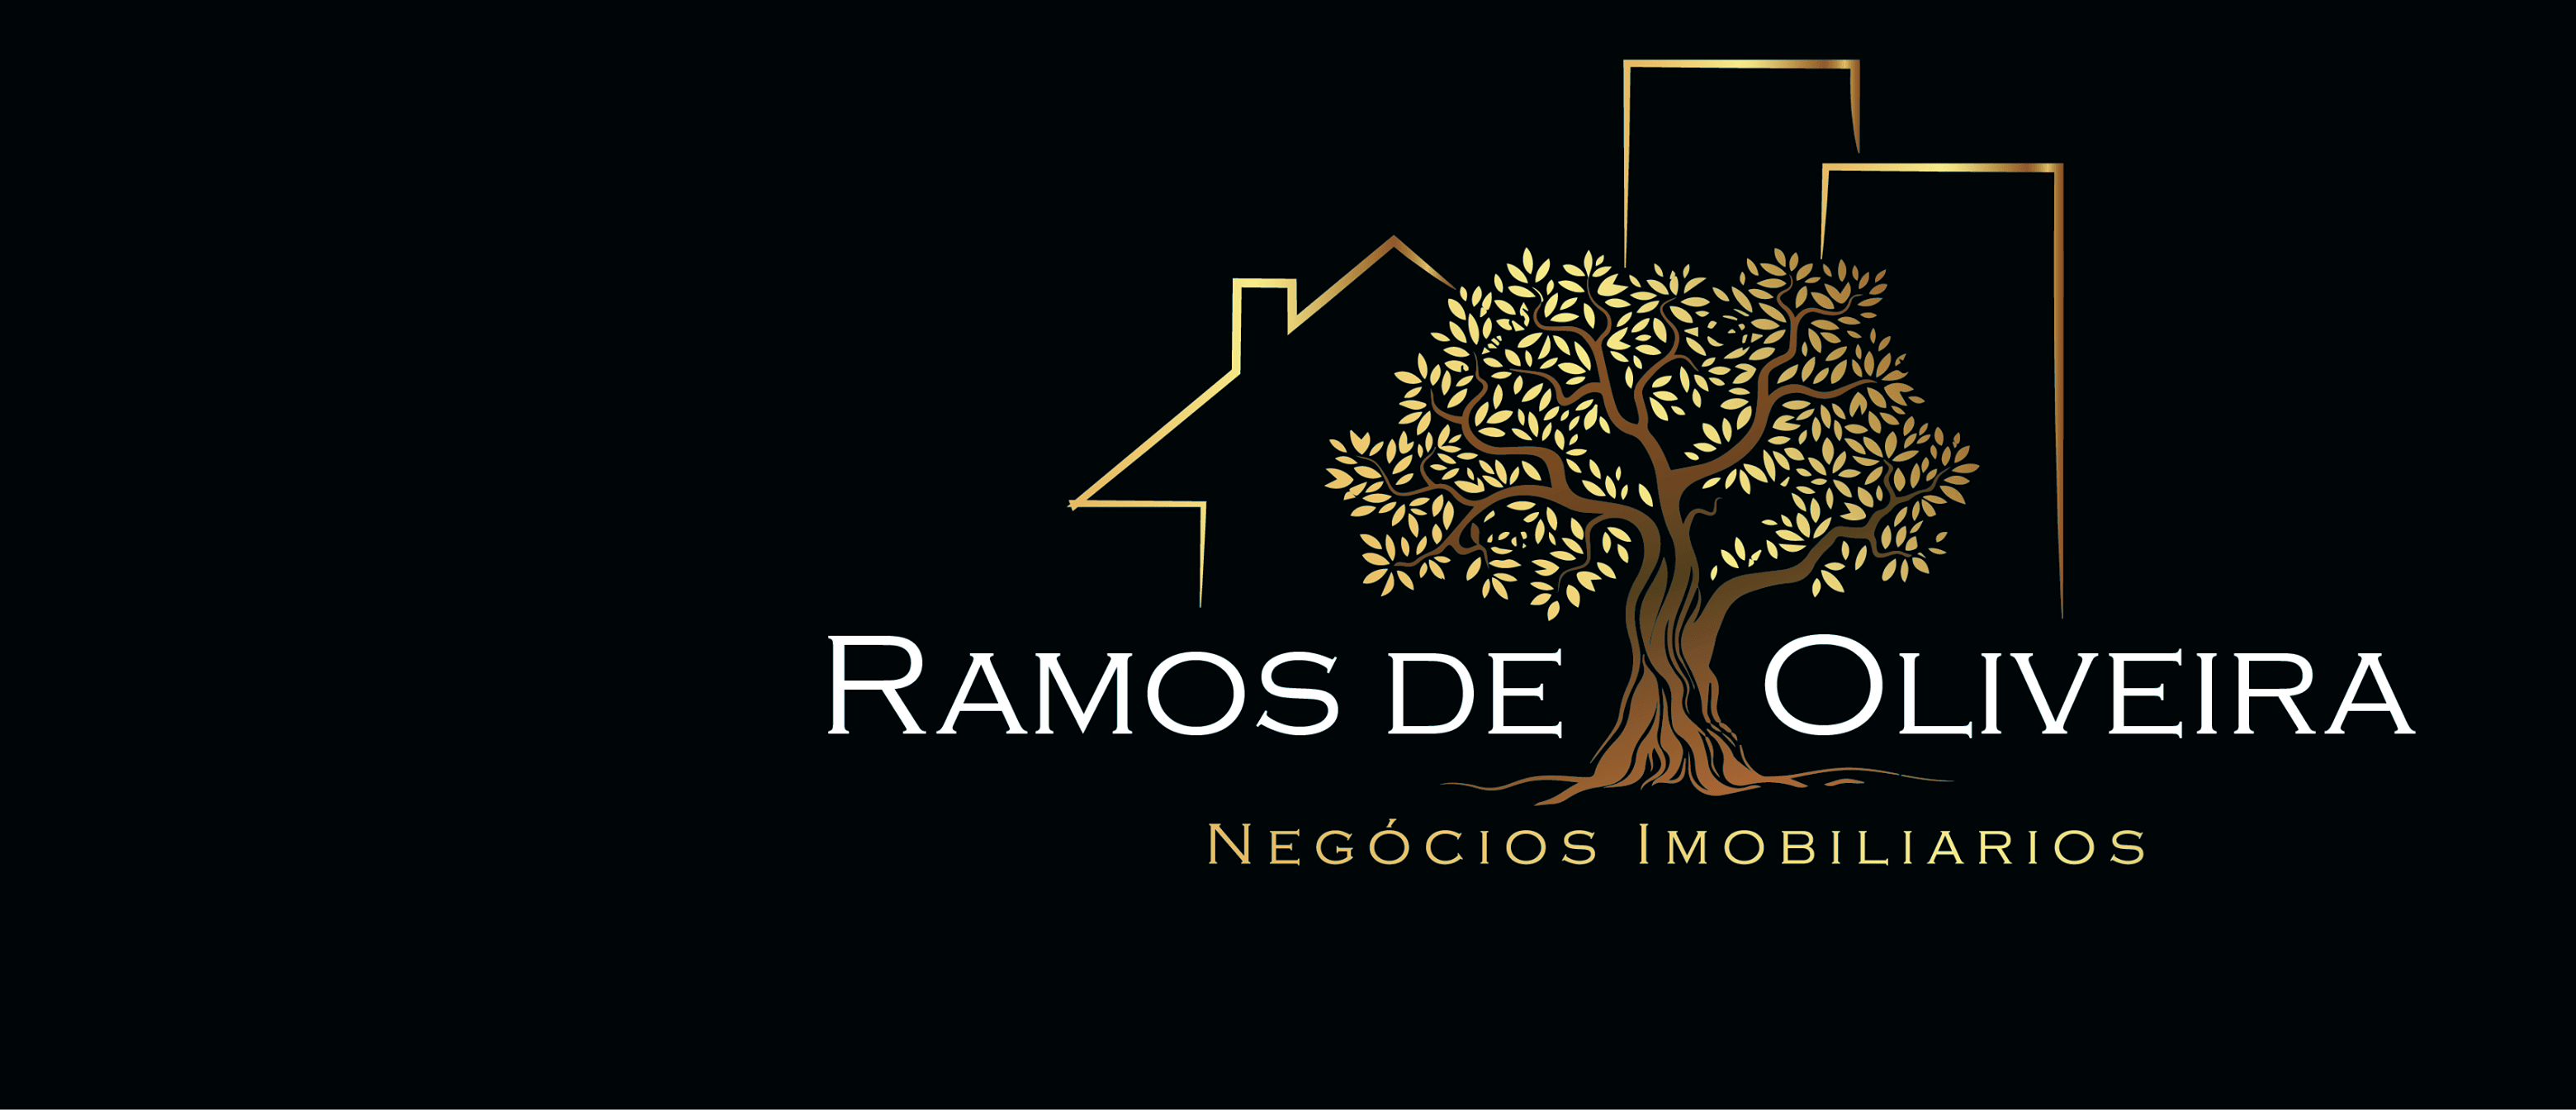 Ramos de Oliveira Negócios Imobiliários